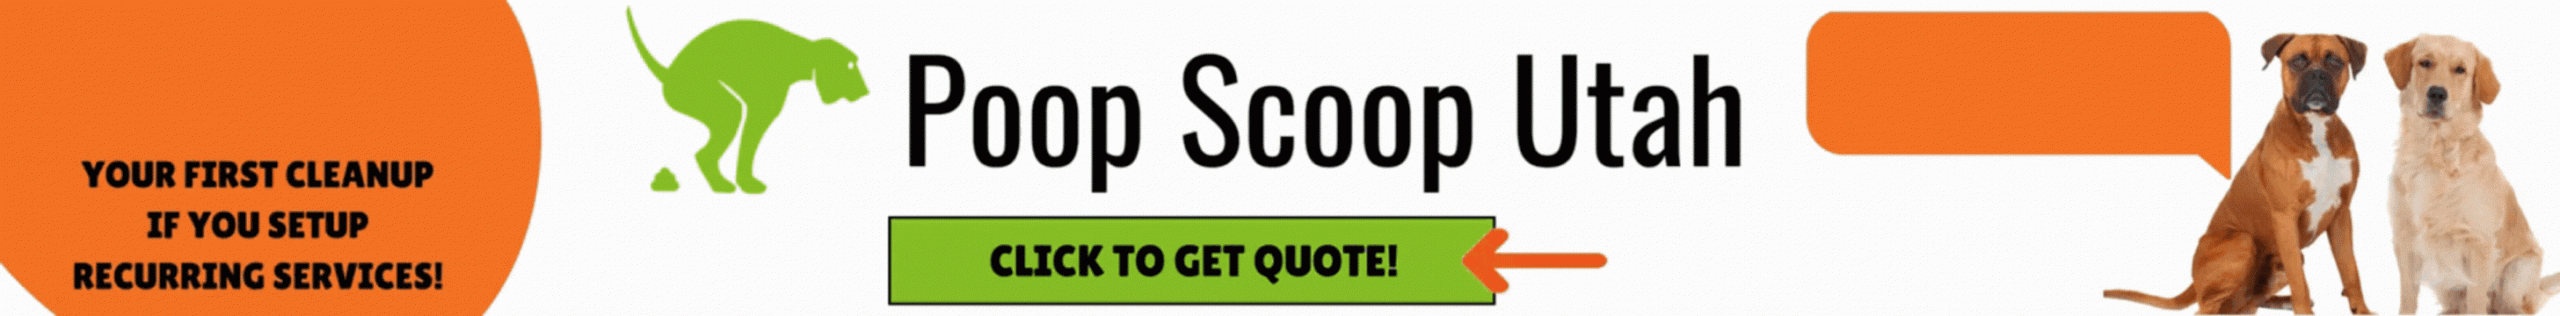 Poop Scoop Utah Web Banner